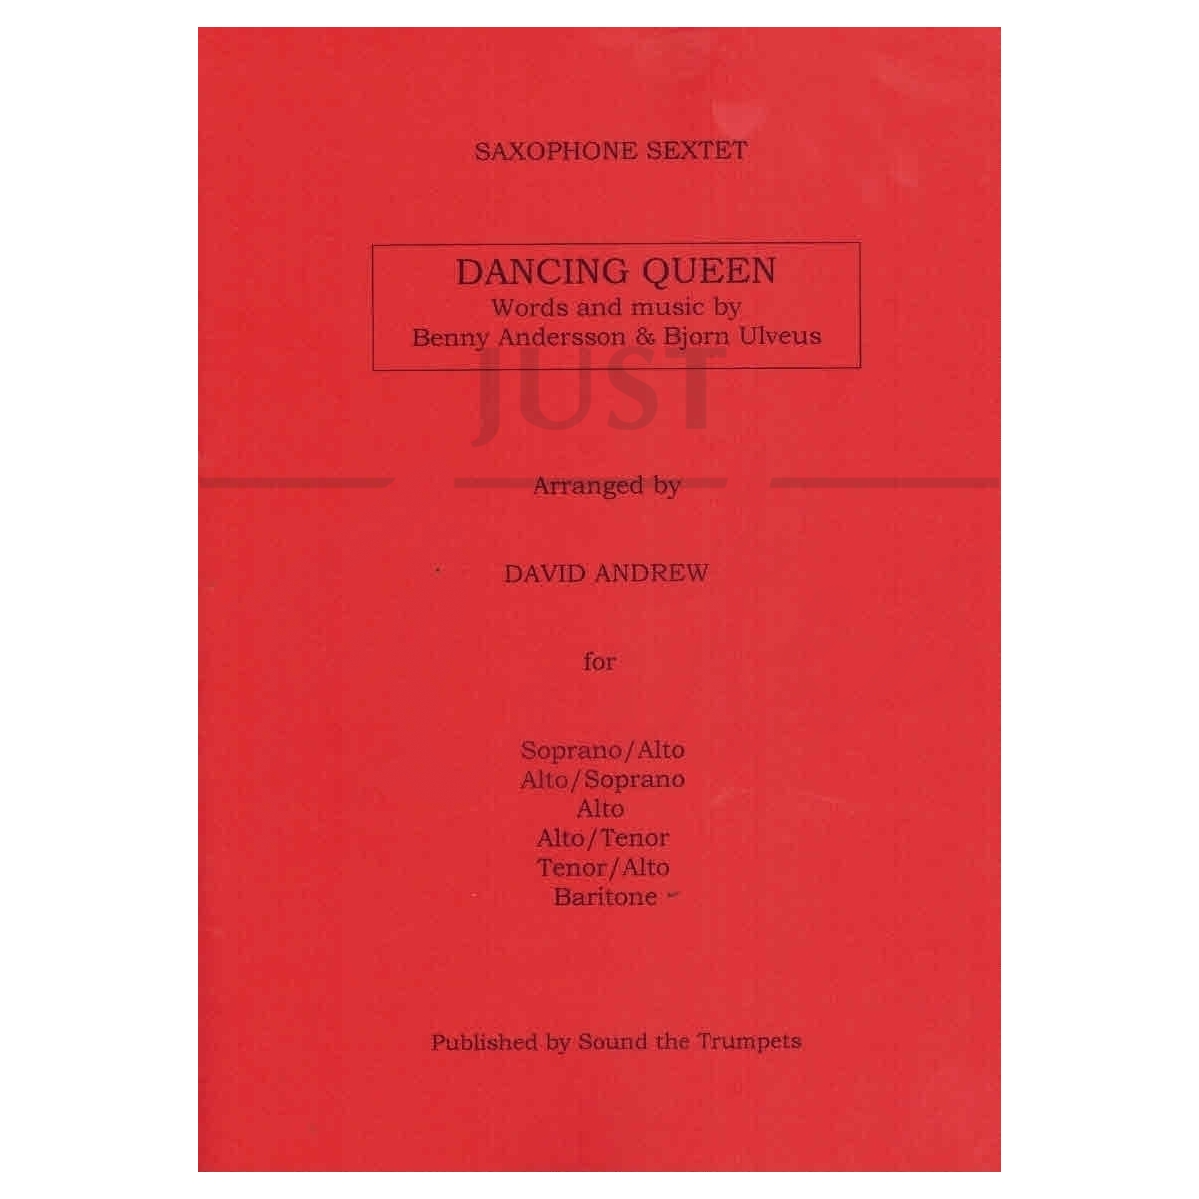 Dancing Queen [Saxophone Sextet]